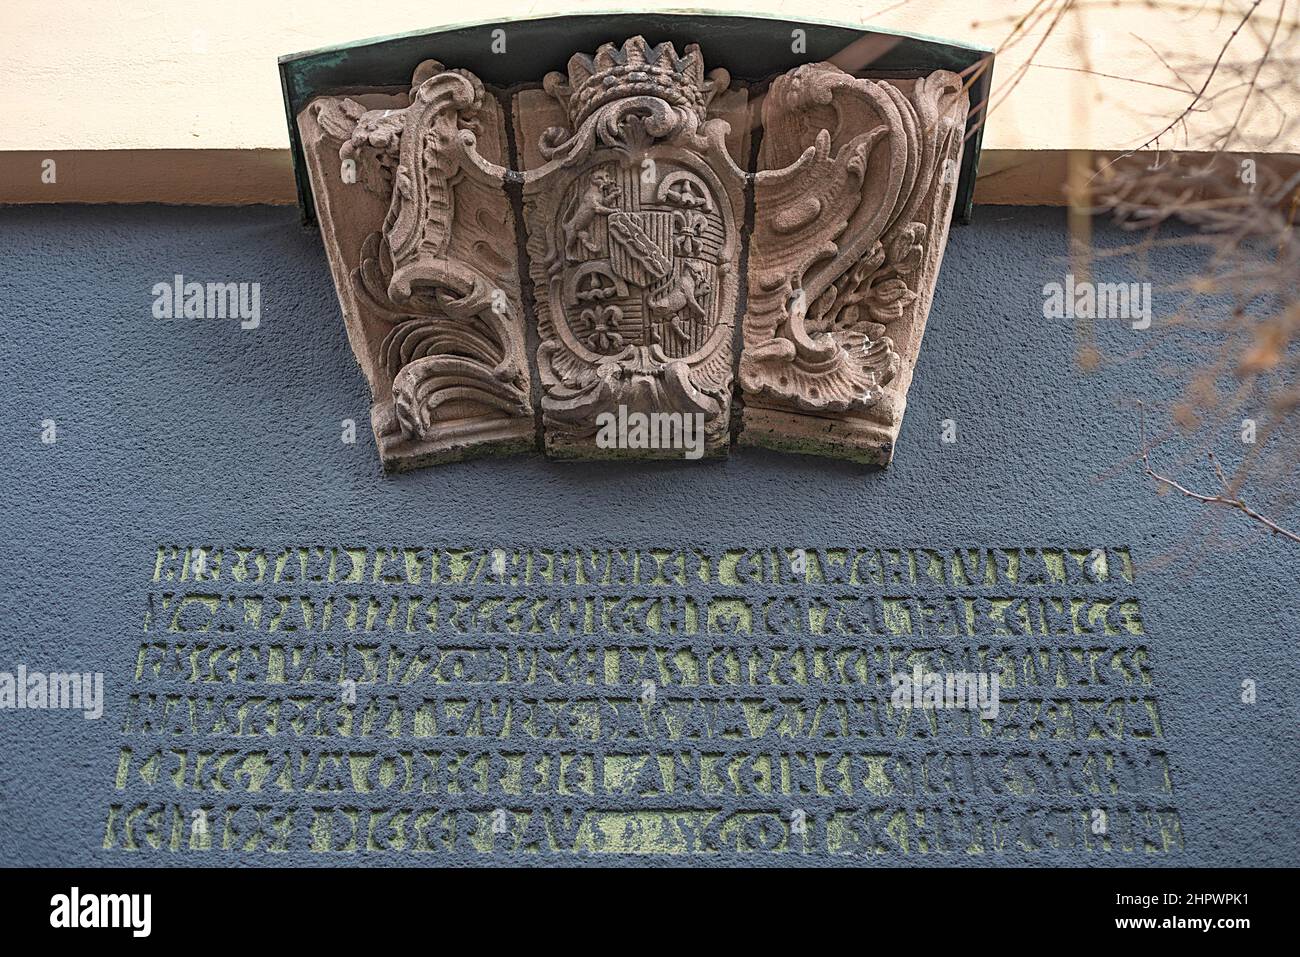 Ancienne clef de voûte de portail de la couche de grès des bras des familles patriciennes Tetzel-Volckamer, c. 1720/30, Tetzelgasse 4, Nuremberg, Moyen-Orient Banque D'Images